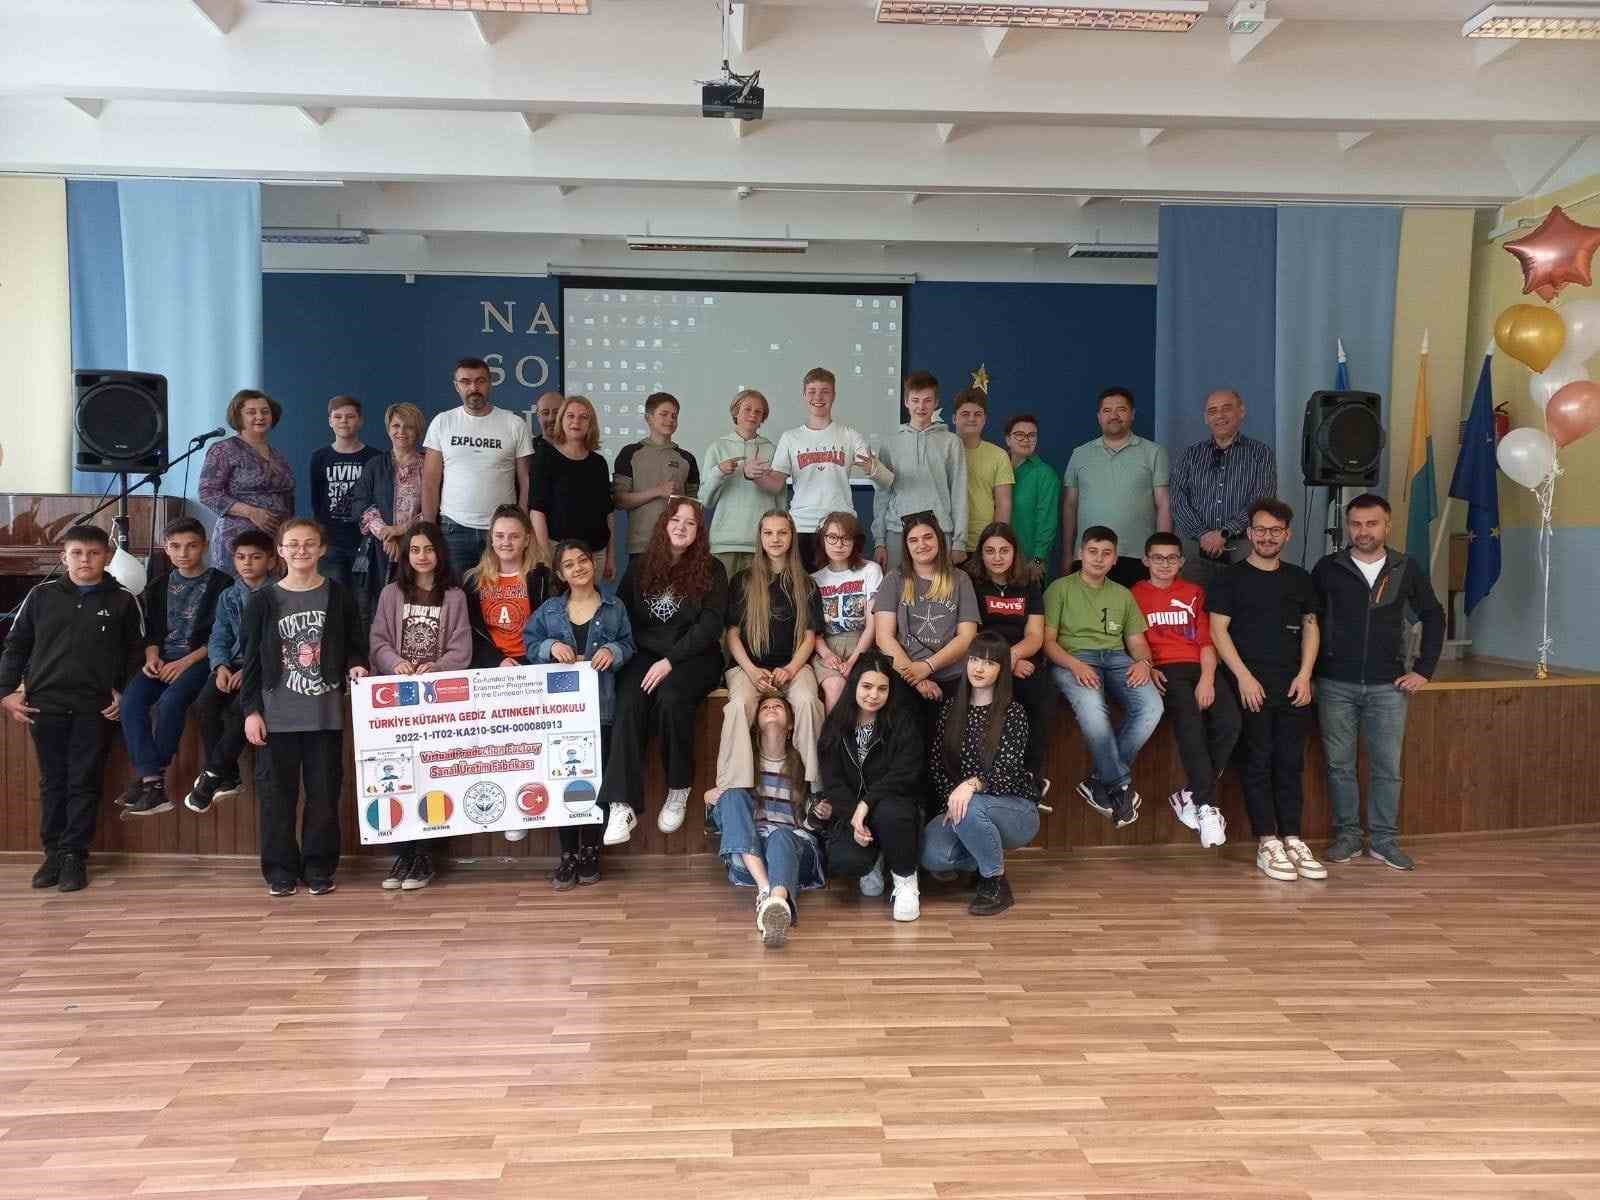 Altınkent Ortaokulu ’Hologram teknolojisinin eğitime entegrasyonu’ için Estonya’ya gitti